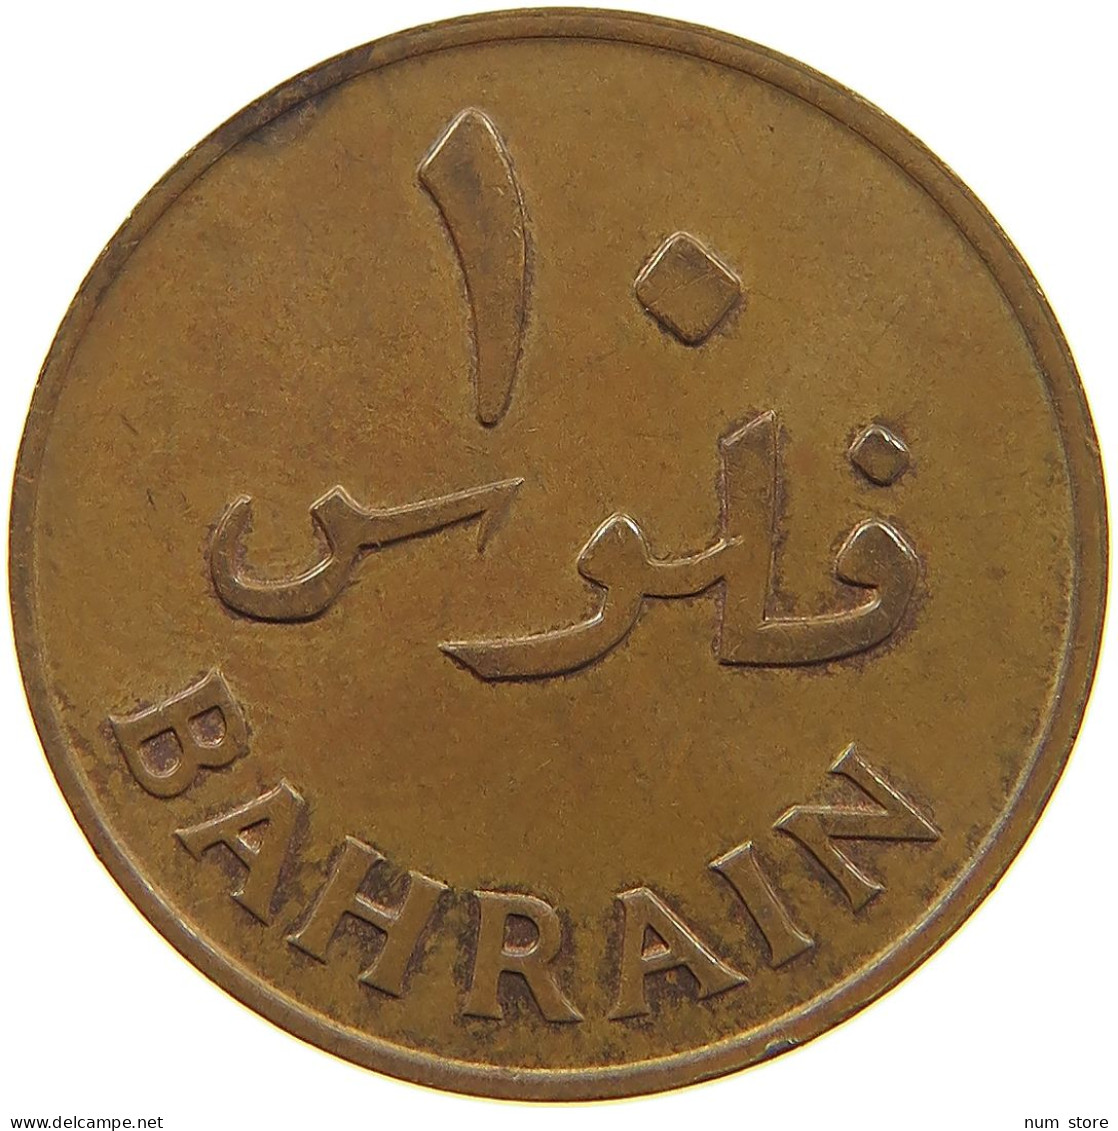 BAHRAIN 10 FILS 1965  #c008 0367 - Bahrain